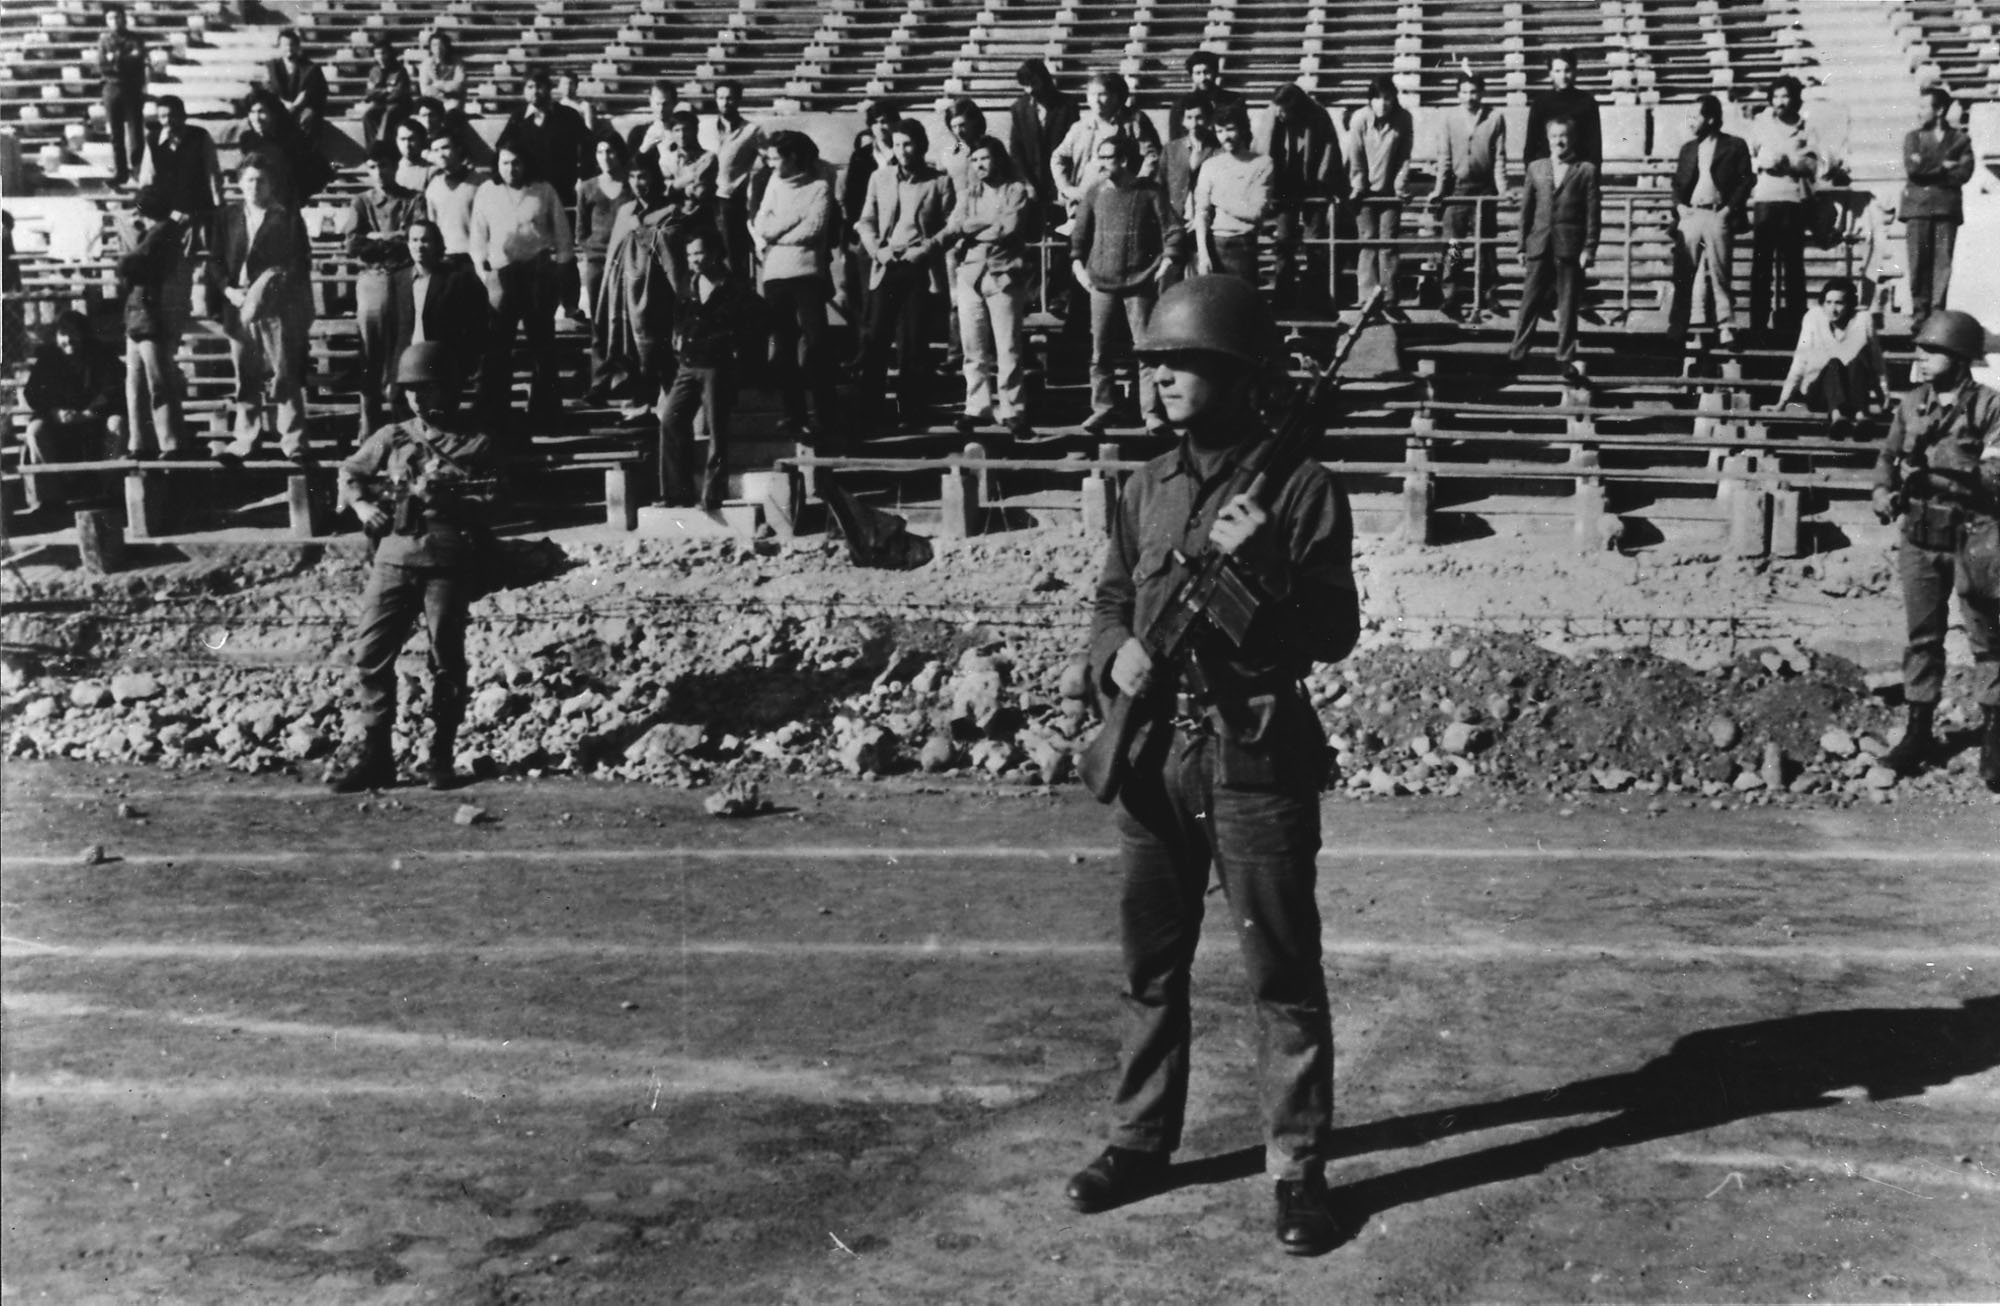 PHOTO: The stadium in Santiago, Chile held political prisoners, Nov. 14, 1973.